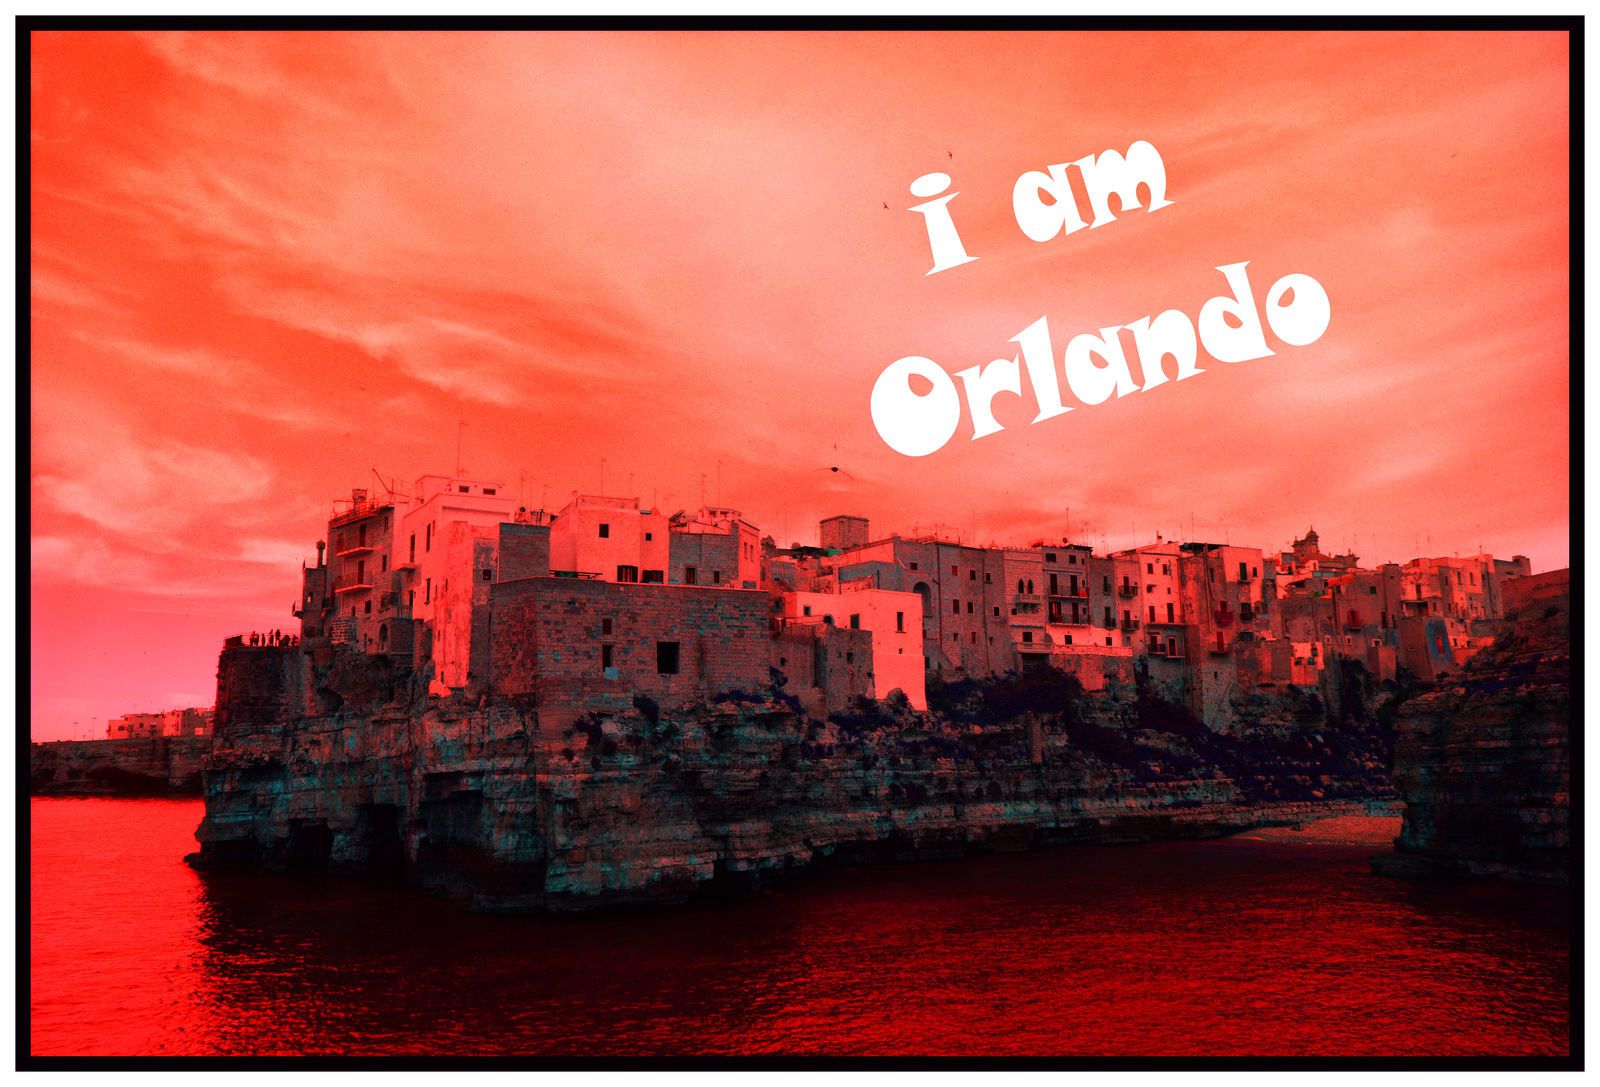 I am Orlando